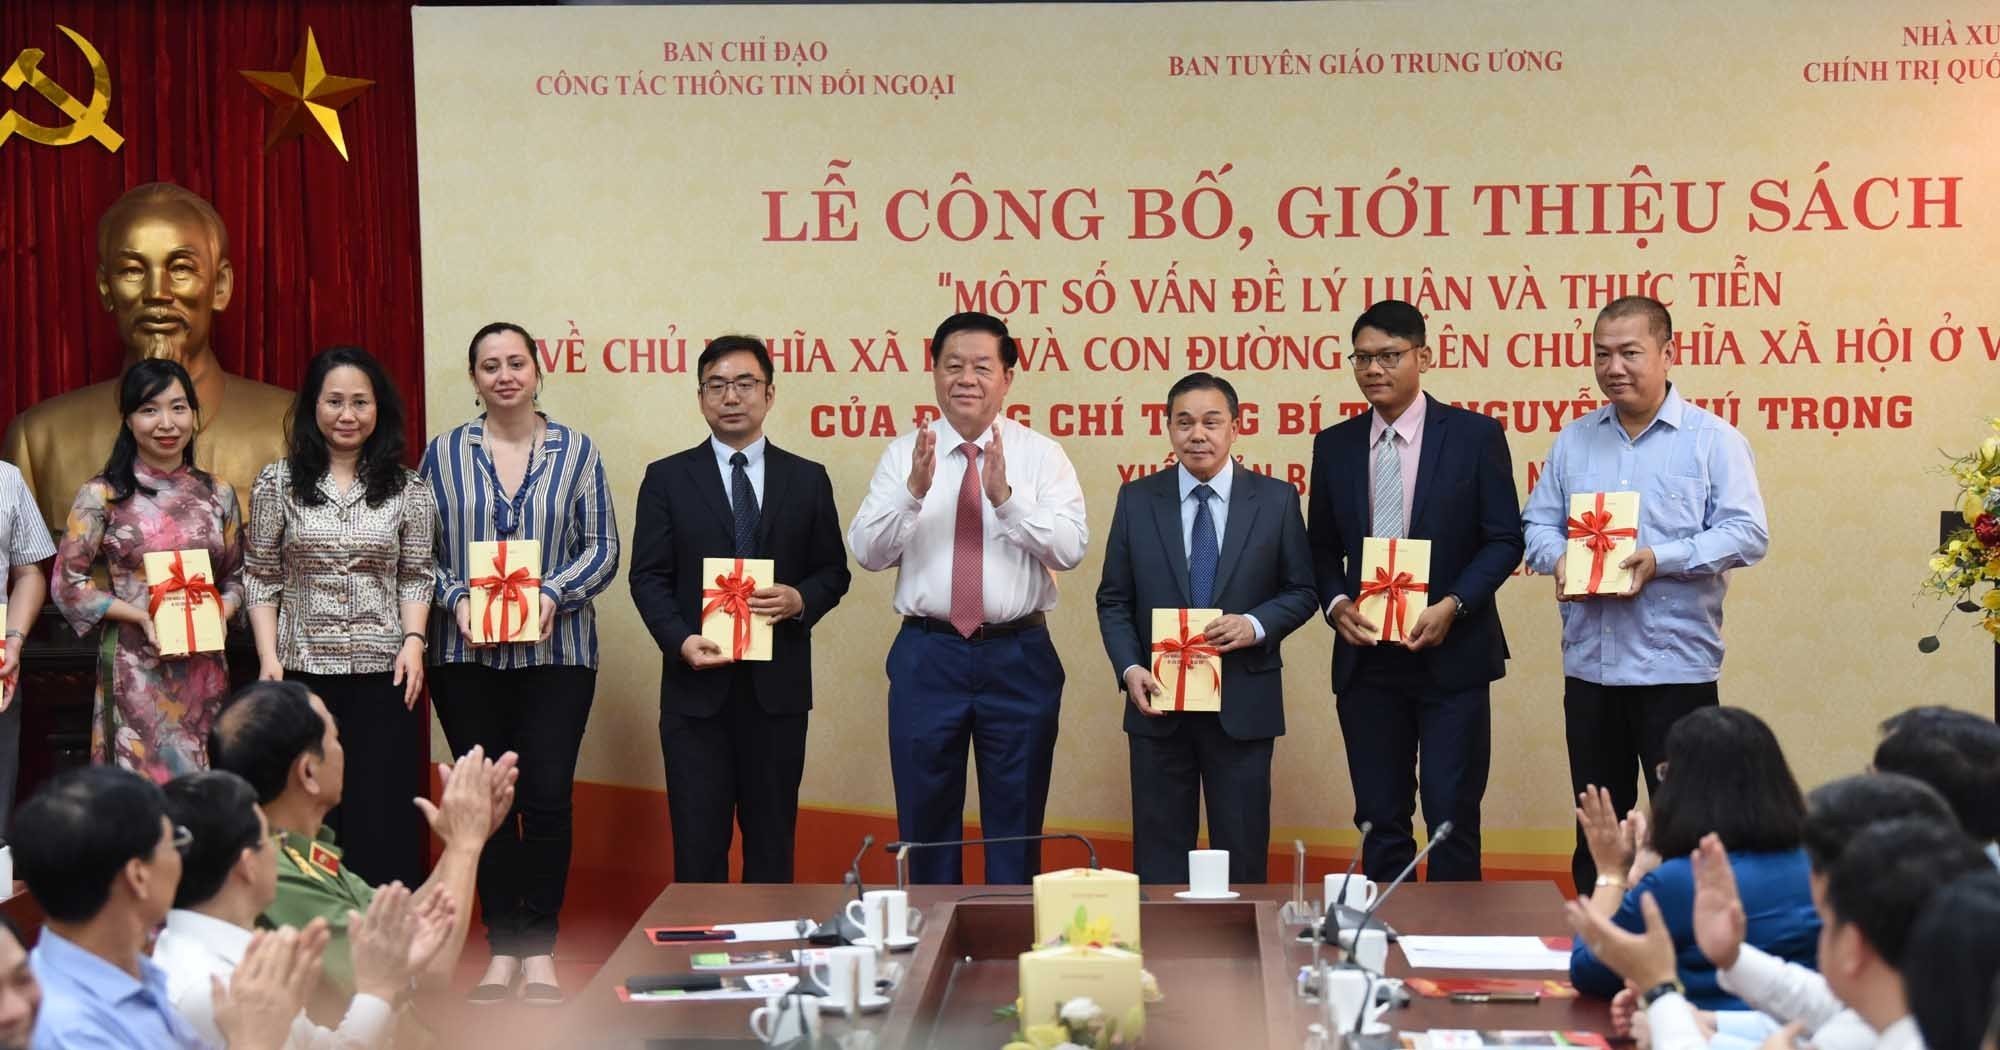 Cuốn sách của Tổng bí thư Nguyễn Phú Trọng được xuất bản bằng 7 ngoại ngữ - Ảnh 2.